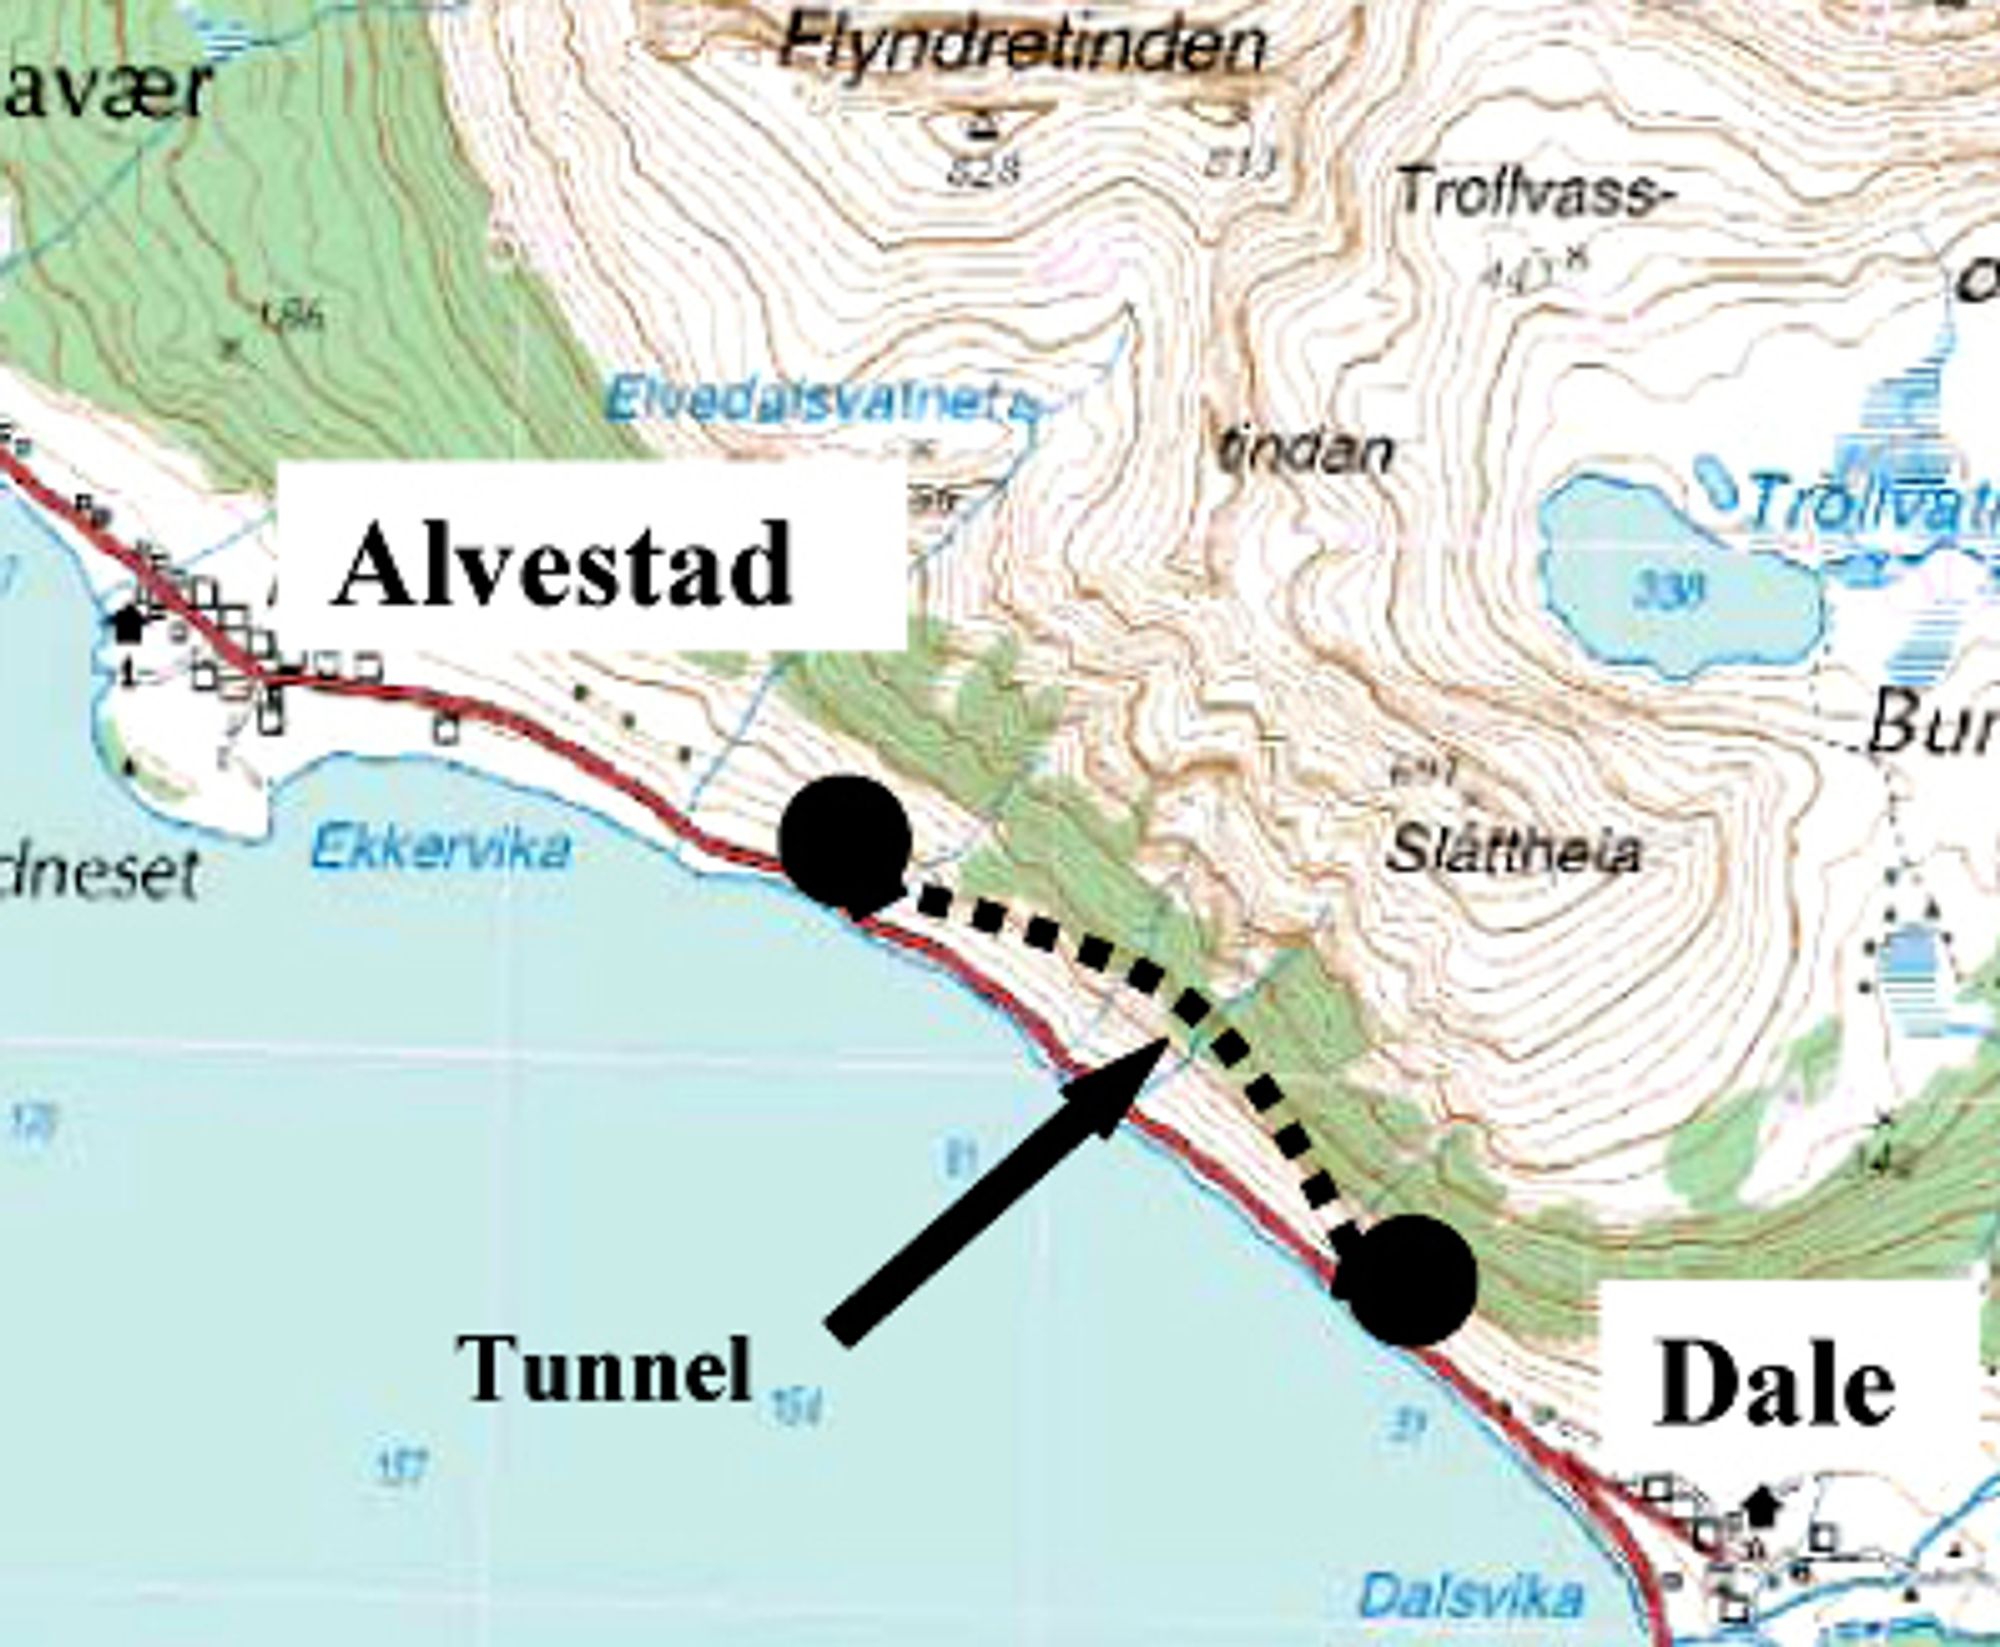 To vintre til må folk på Grytøya leve med rasfaren. Før vinteren 2010/2011 skal Liantunnelen være klar til bruk, og den rasfarlige strekningen kan legges ned.